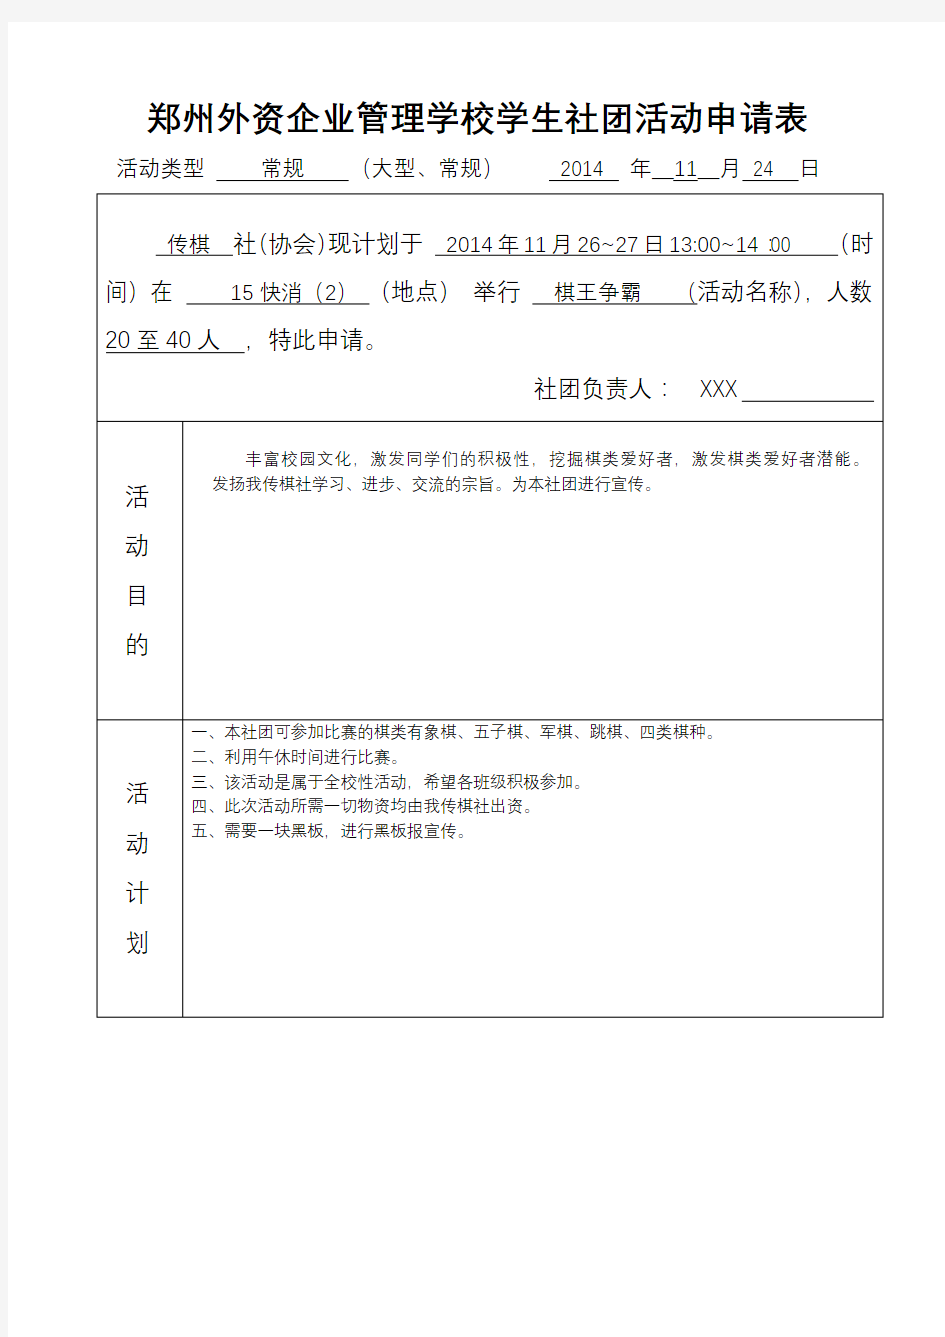 郑州外资企业管理学校学生社团活动申请表【模板】